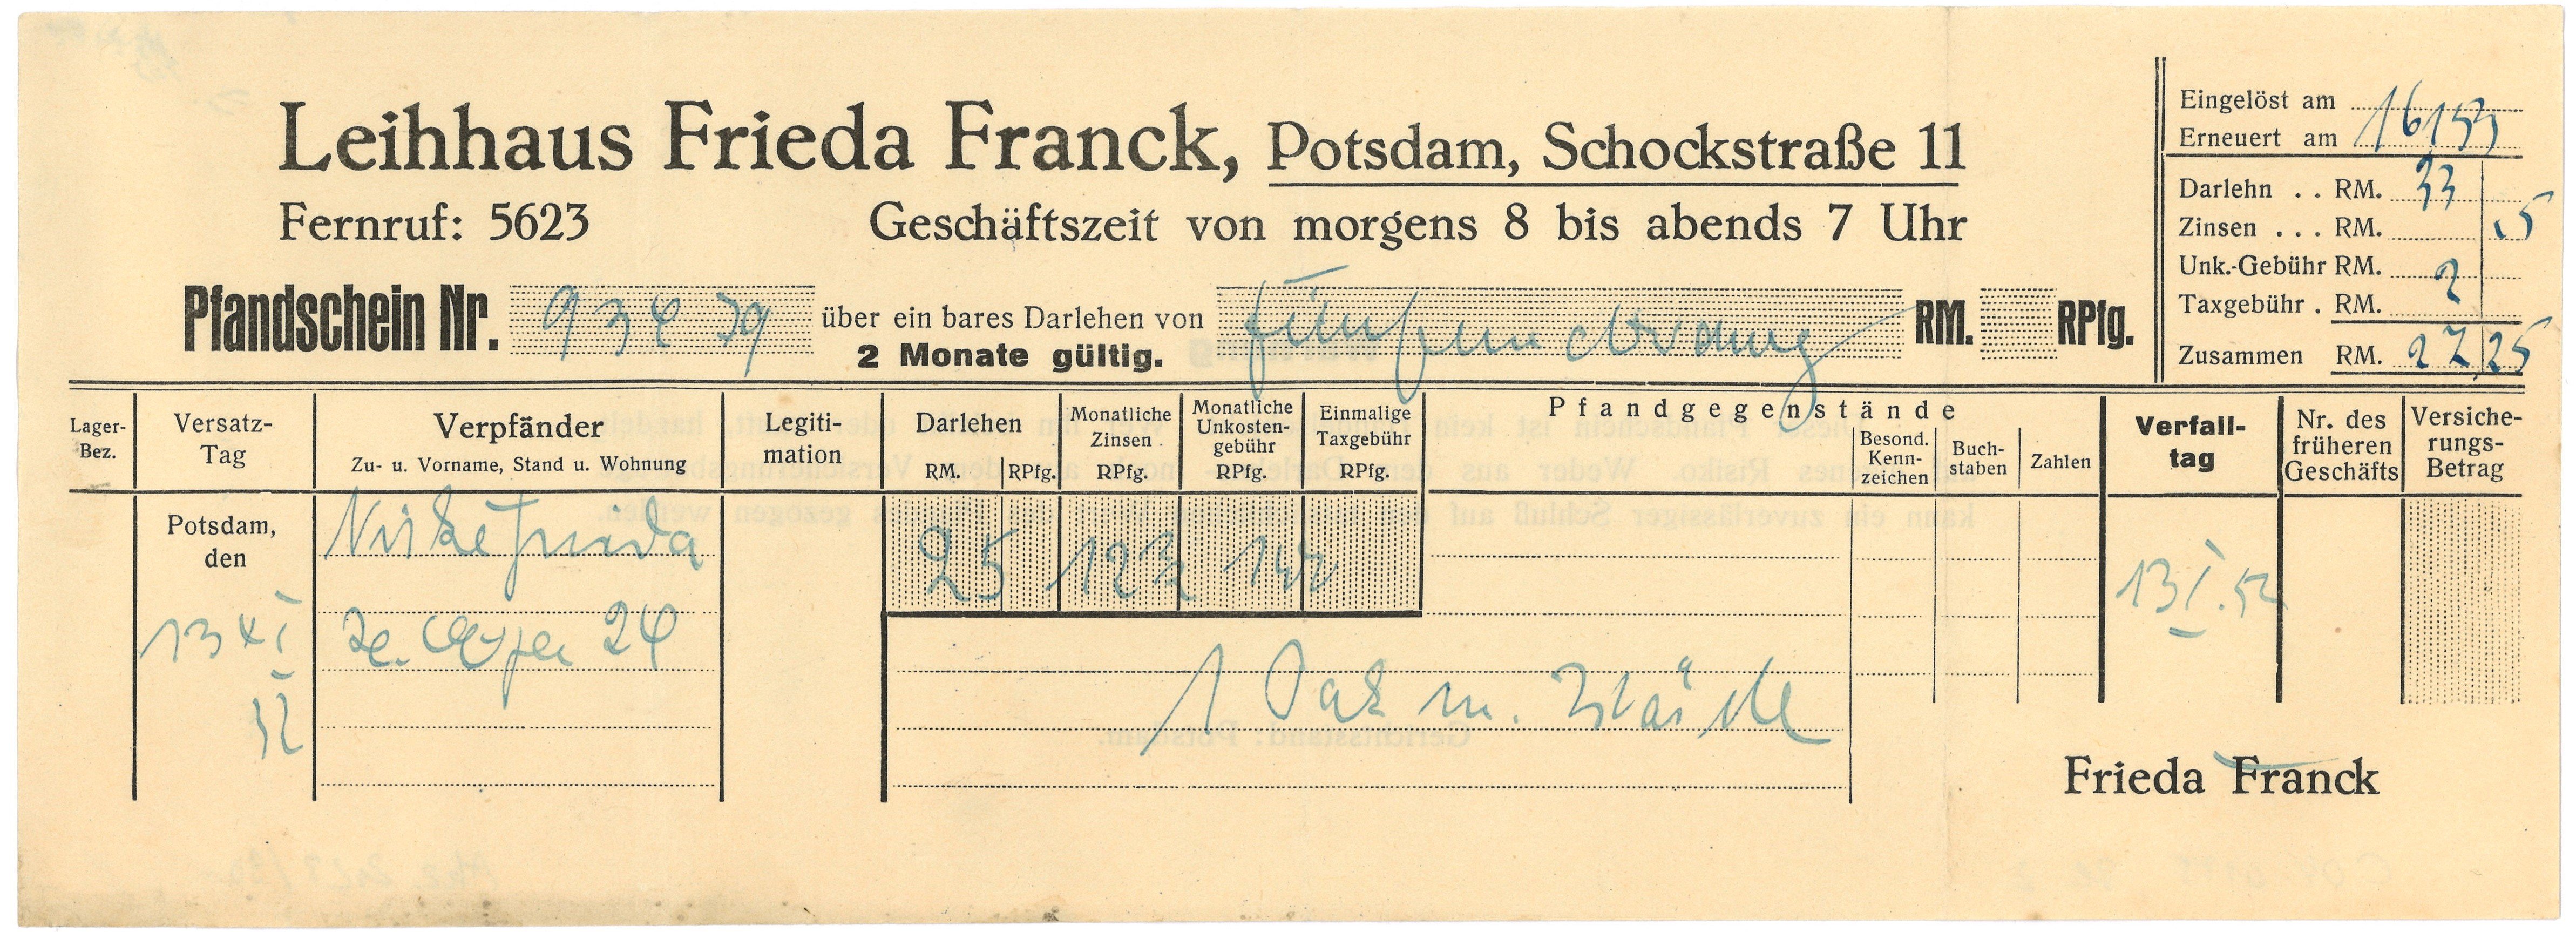 Pfandschein des Leihhauses Frieda Franck in Potsdam 1952/53 (Landesgeschichtliche Vereinigung für die Mark Brandenburg e.V., Archiv CC BY)